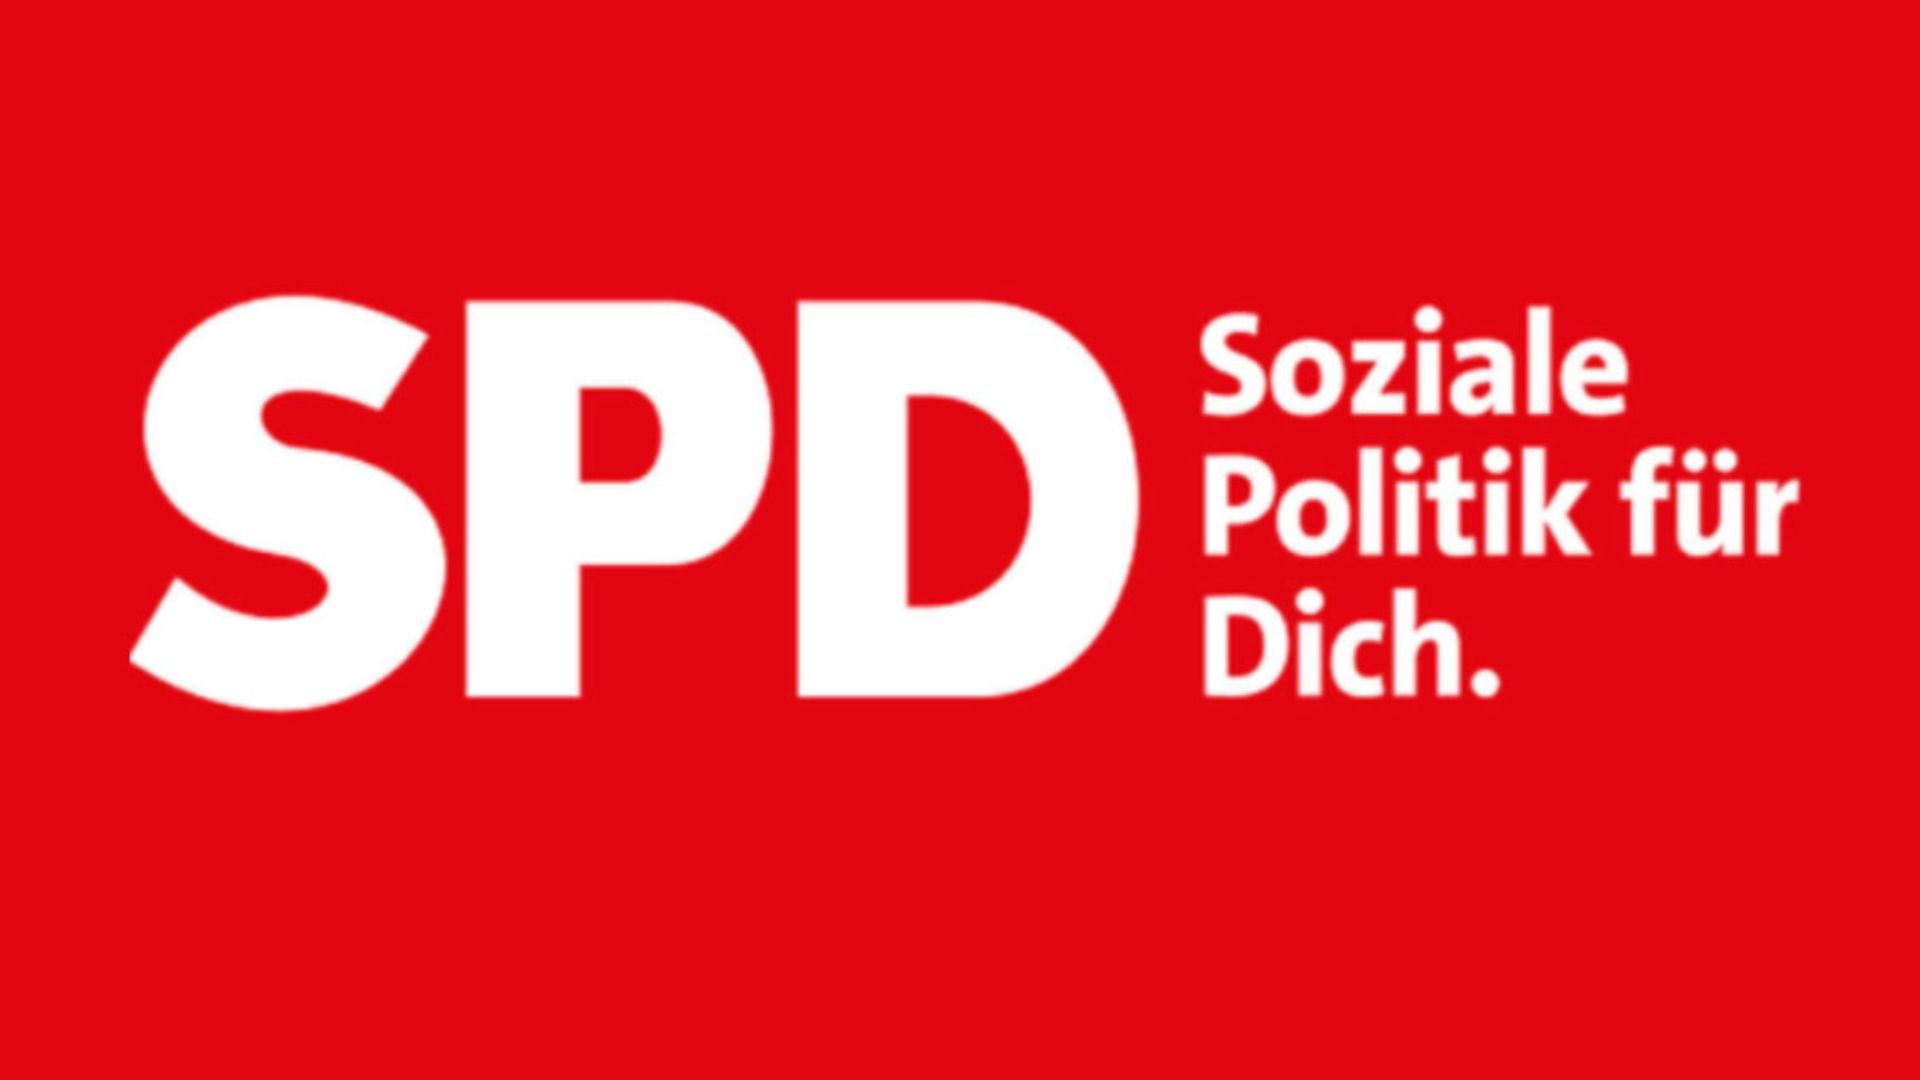 Weißer Text auf rotem Hintergrund. Es steht geschrieben: SPD - Soziale Politik für Dich.